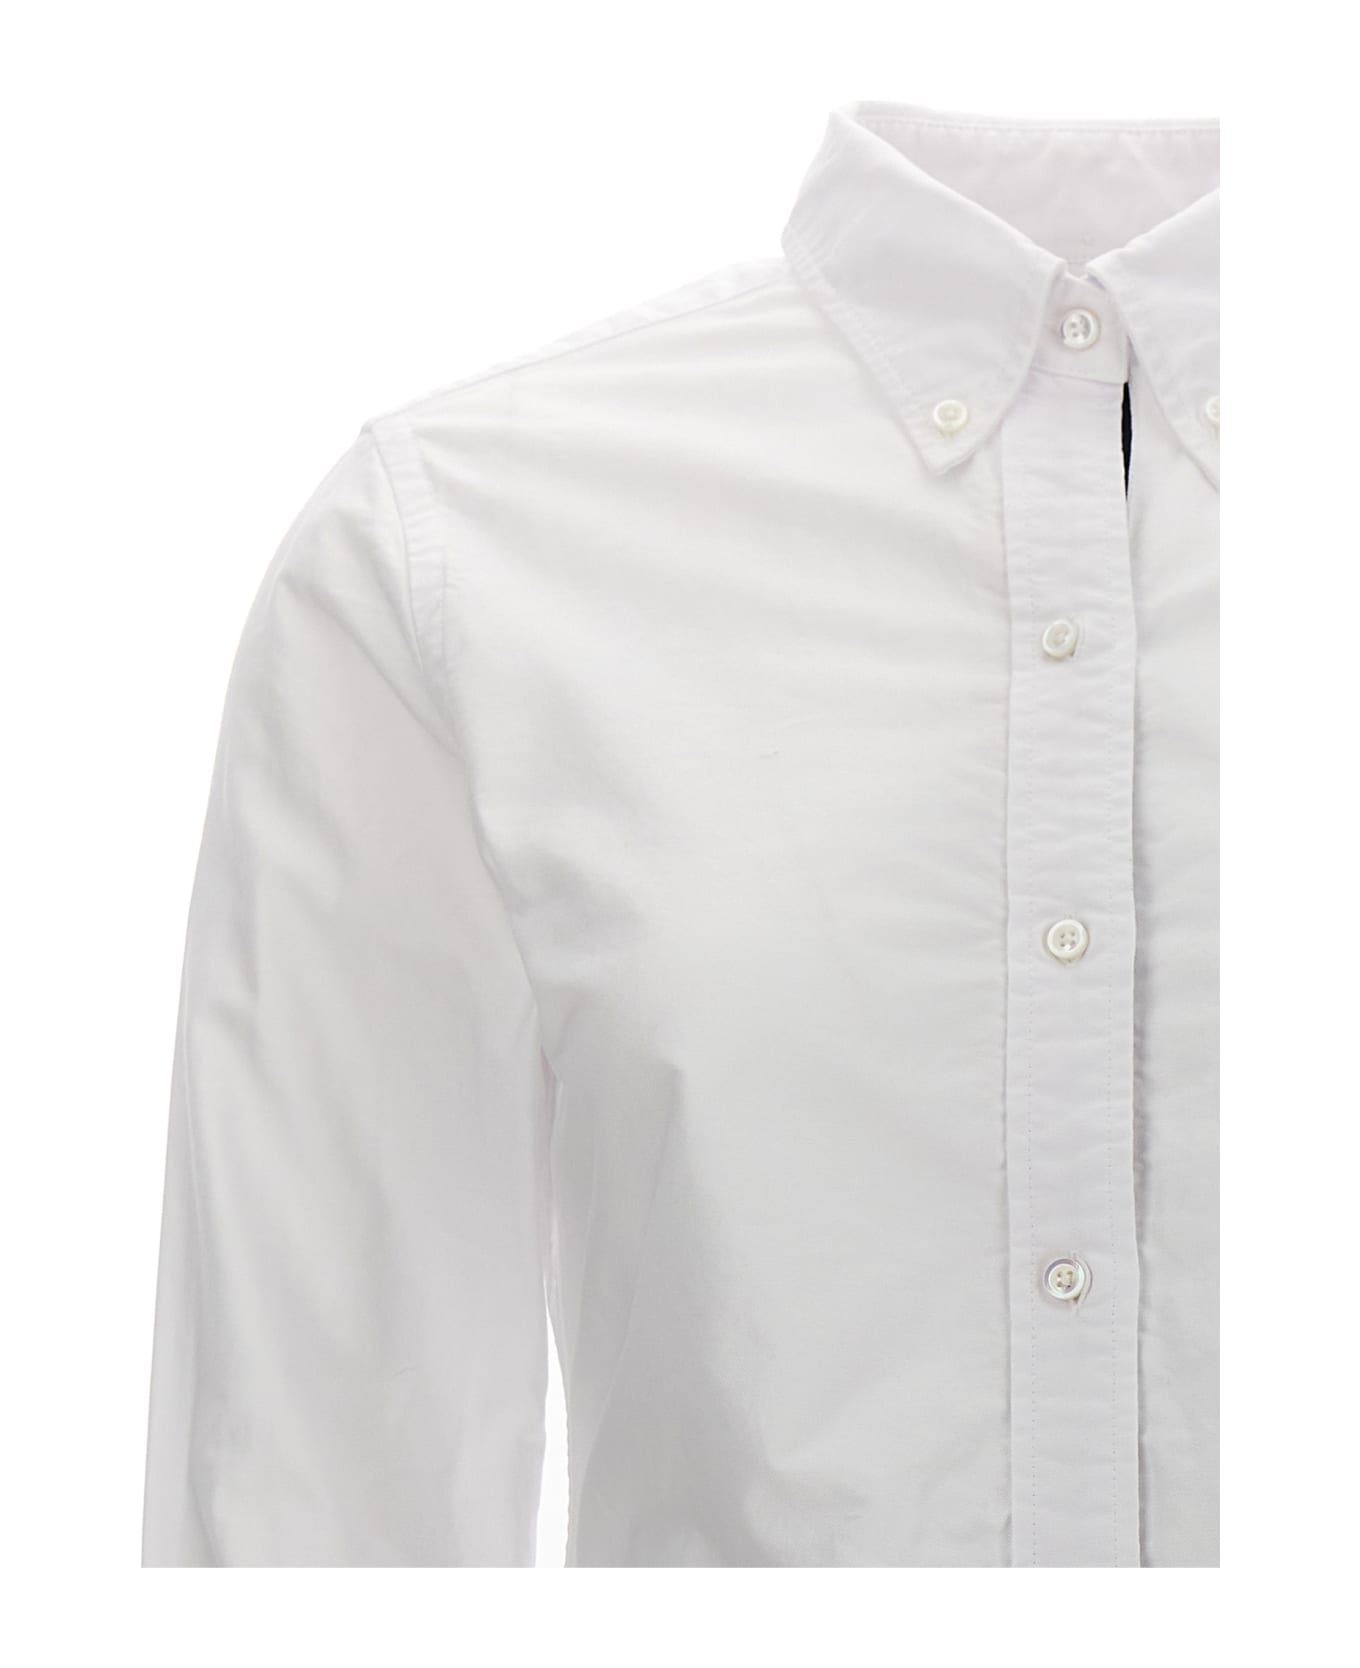 Thom Browne 'rwb' Shirt - White シャツ